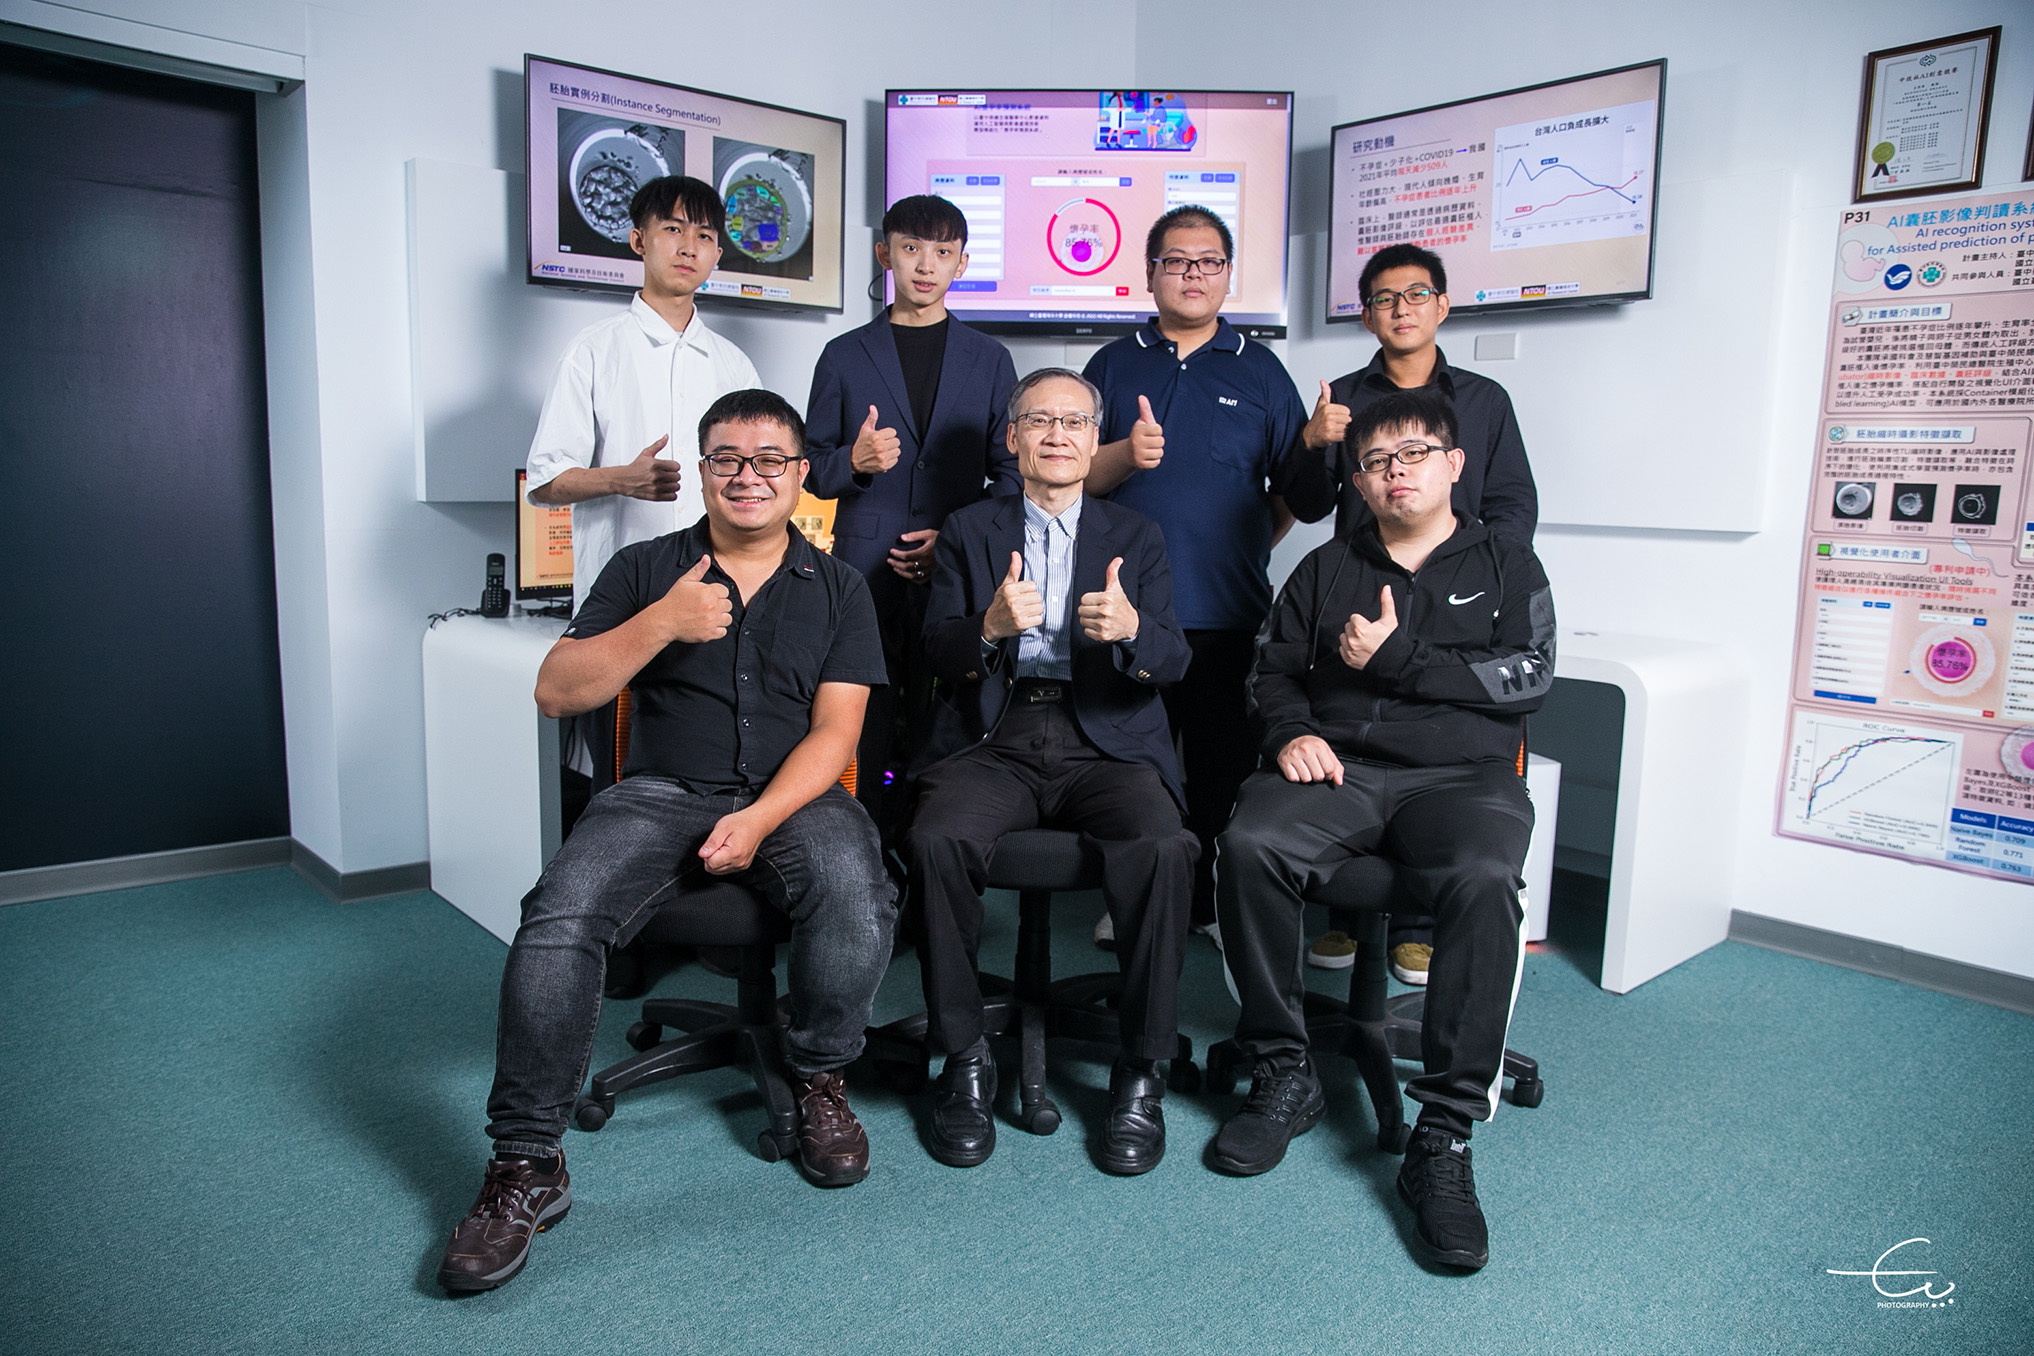 海大電機系王榮華教授(中)團隊AI囊胚影像判讀系統 獲醫界專家肯定